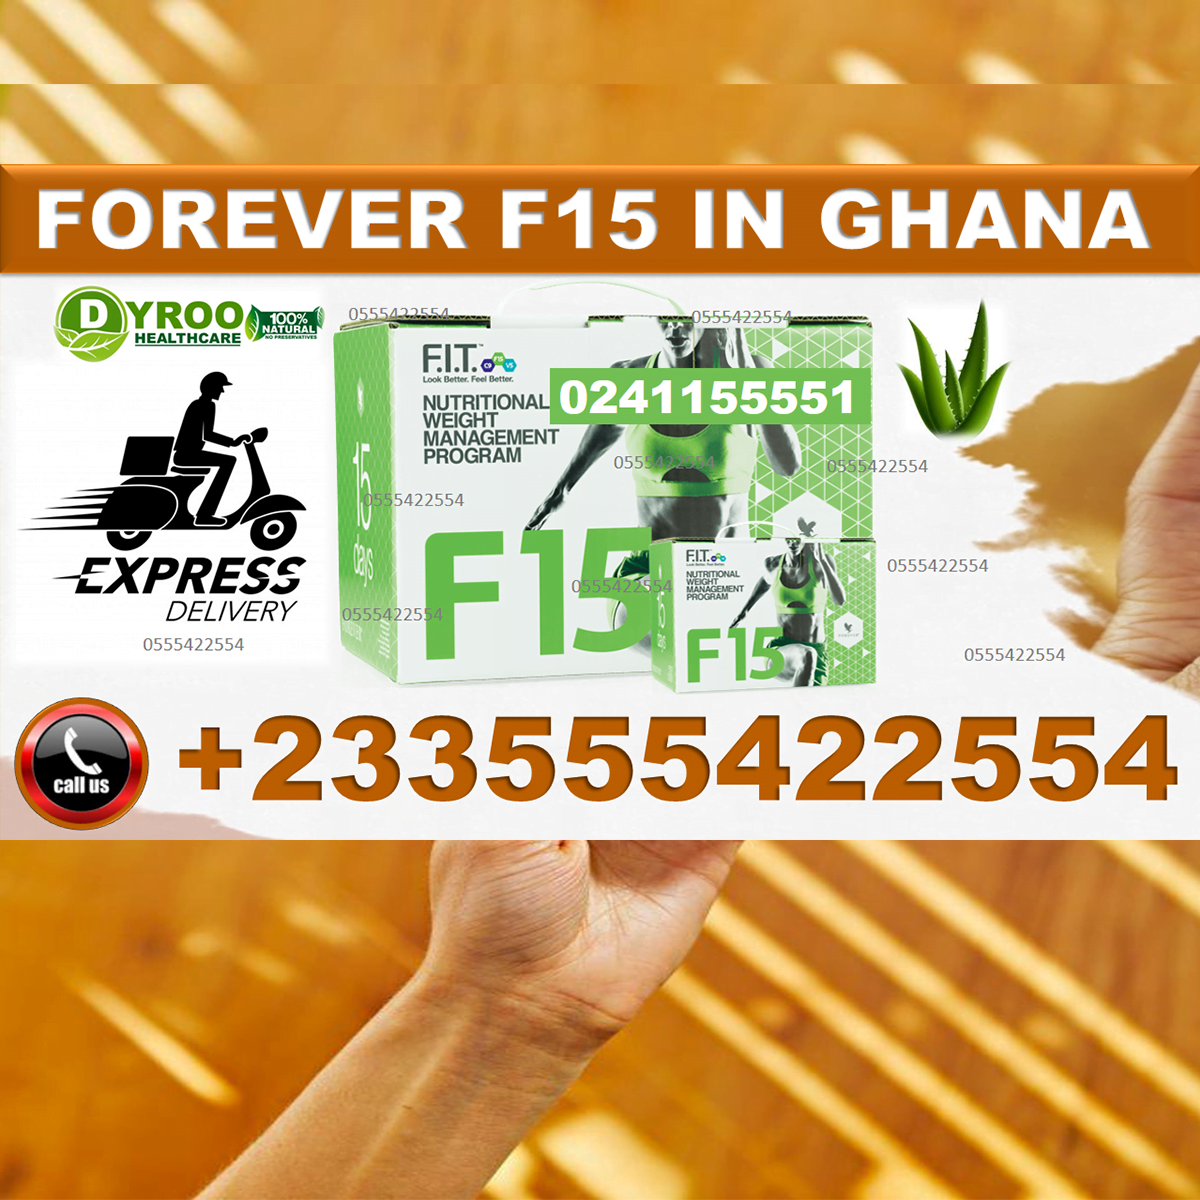 Forever F15 in Ghana